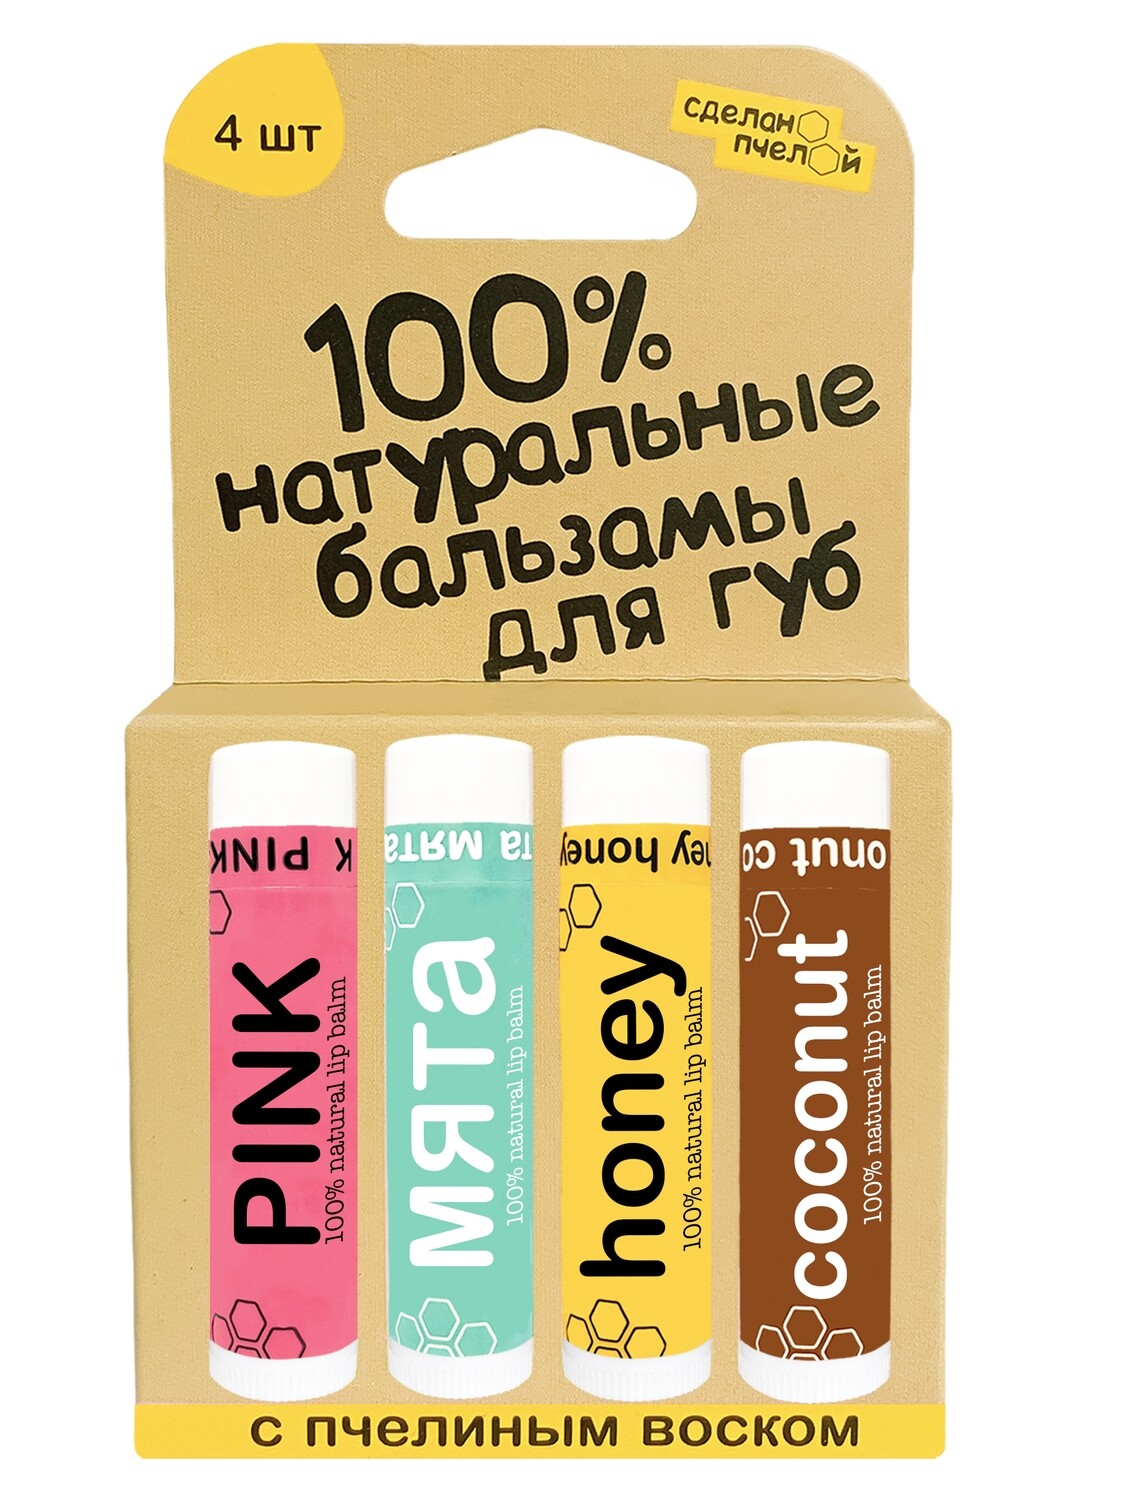 100% натуральные бальзамы для губ "PINK, МЯТА, HONEY, COCONUT", коробка 4 штуки